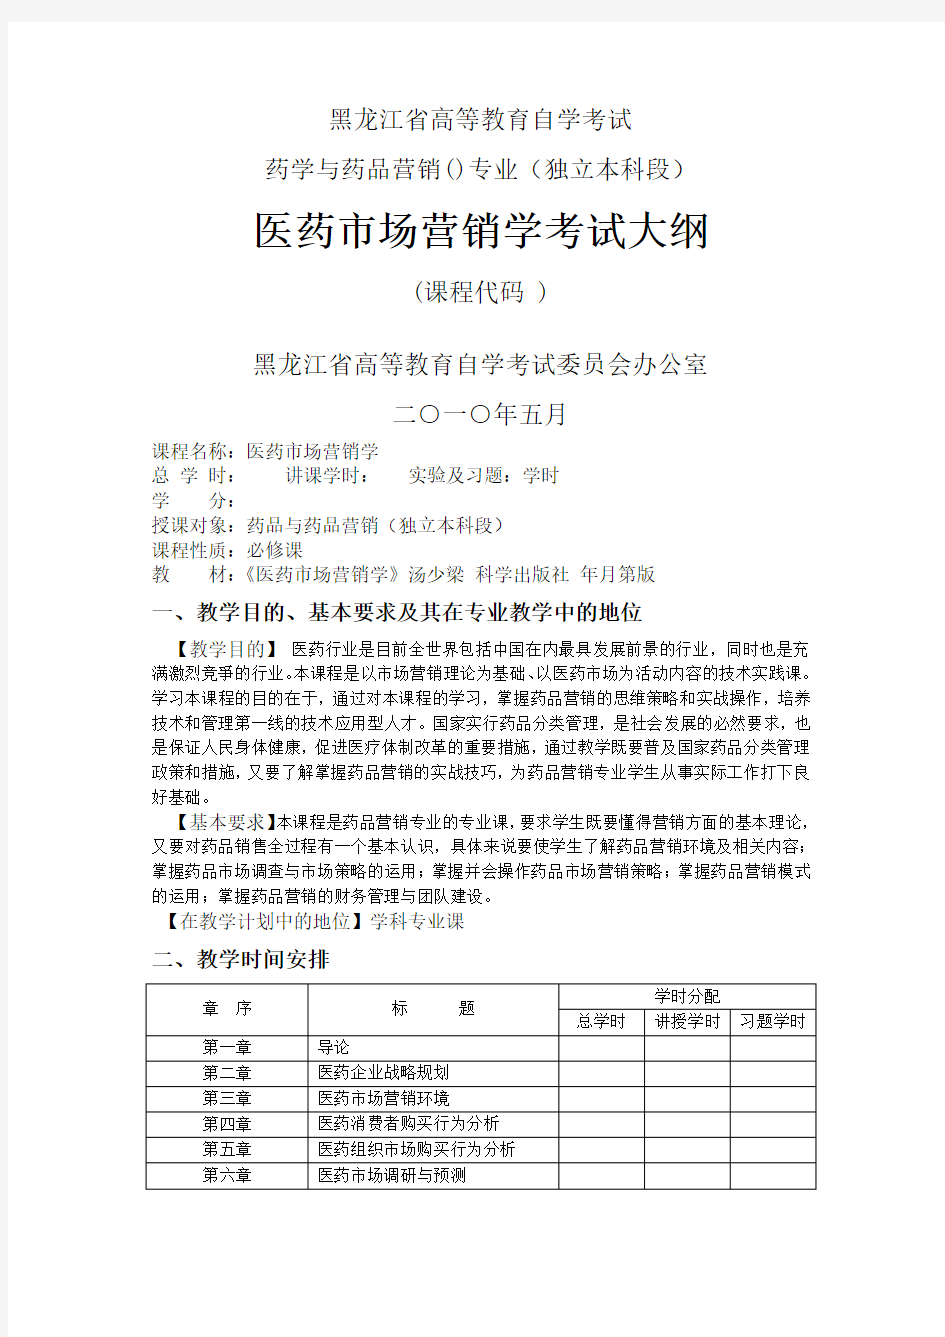 黑龙江省高等教育自学考试